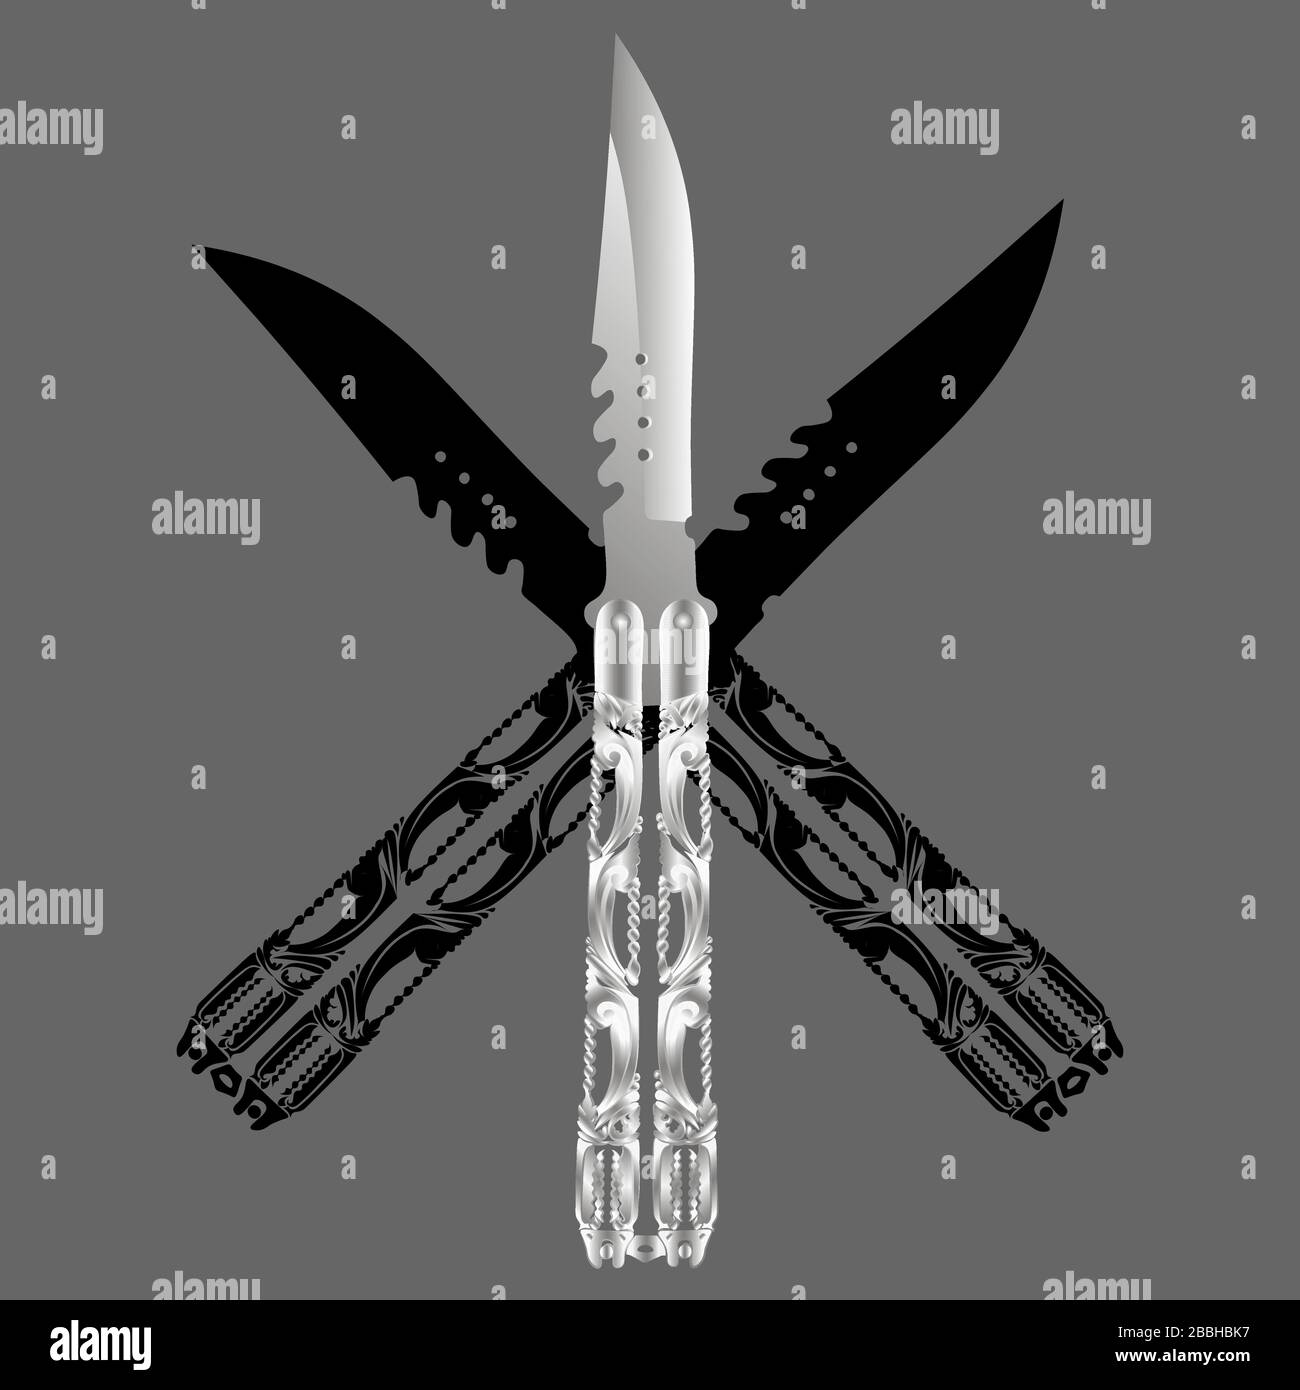 The One BM40 BM42 BM42s BM43 BM46 BM47 BM49 Knife /Balisong Knives/All  Steel Handle/440c Blade From Guoknife002, $15.23 - DHgate.Com